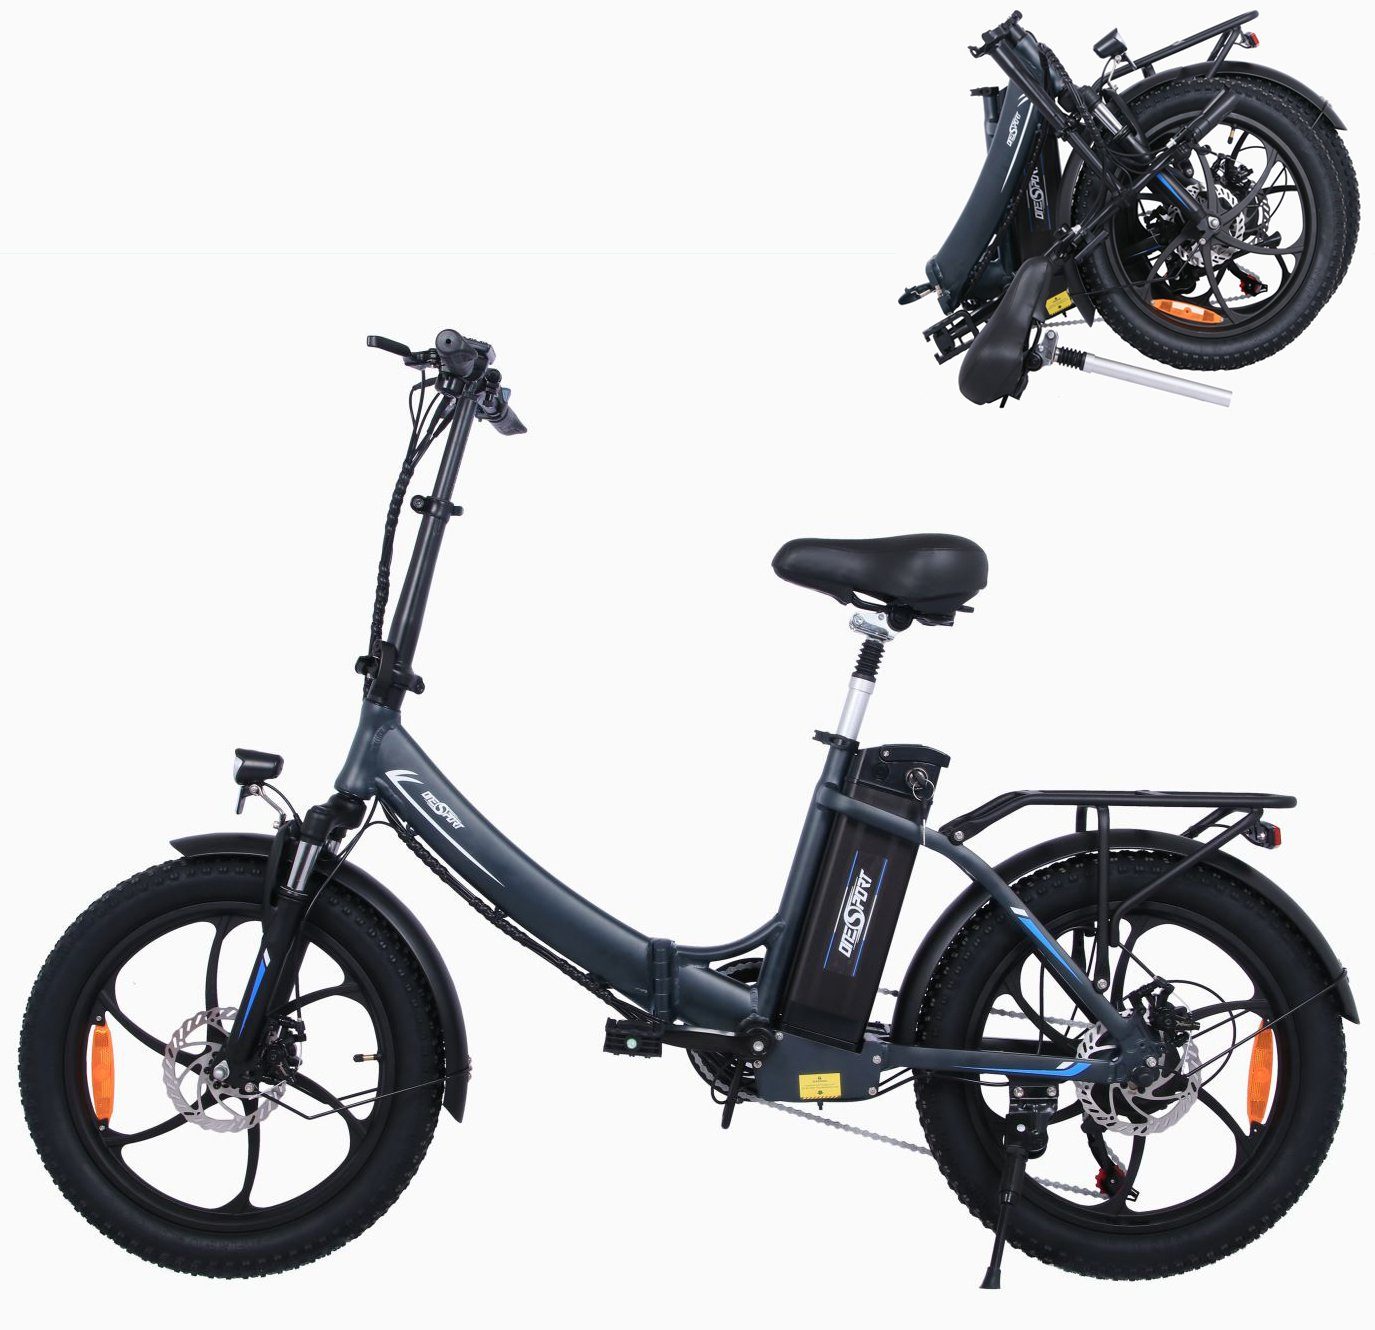 Fangqi E-Bike 20 Zoll Klapprad Elektrofahrrad,E-Bike,Shimano 7-Gang,48V/15Ah akku, Kettenschaltung, Heckmotor, (spar-set,E-Mountainbike, E-Dirtbike, MTB(Optionaler Gashebel: Nach dem Einbau des Gashebels kann ein rein elektrischer Modus erreicht werden, Fahrmodi: Pedal-Modus und Power-Assist-Modus), Stadtfahrräder, Smartbikes, Elektrofahrräder für Herren und Damen), Datendisplay, Lithium-Ionen-Akku, Höhenverstellbare Sattelstütze Silber